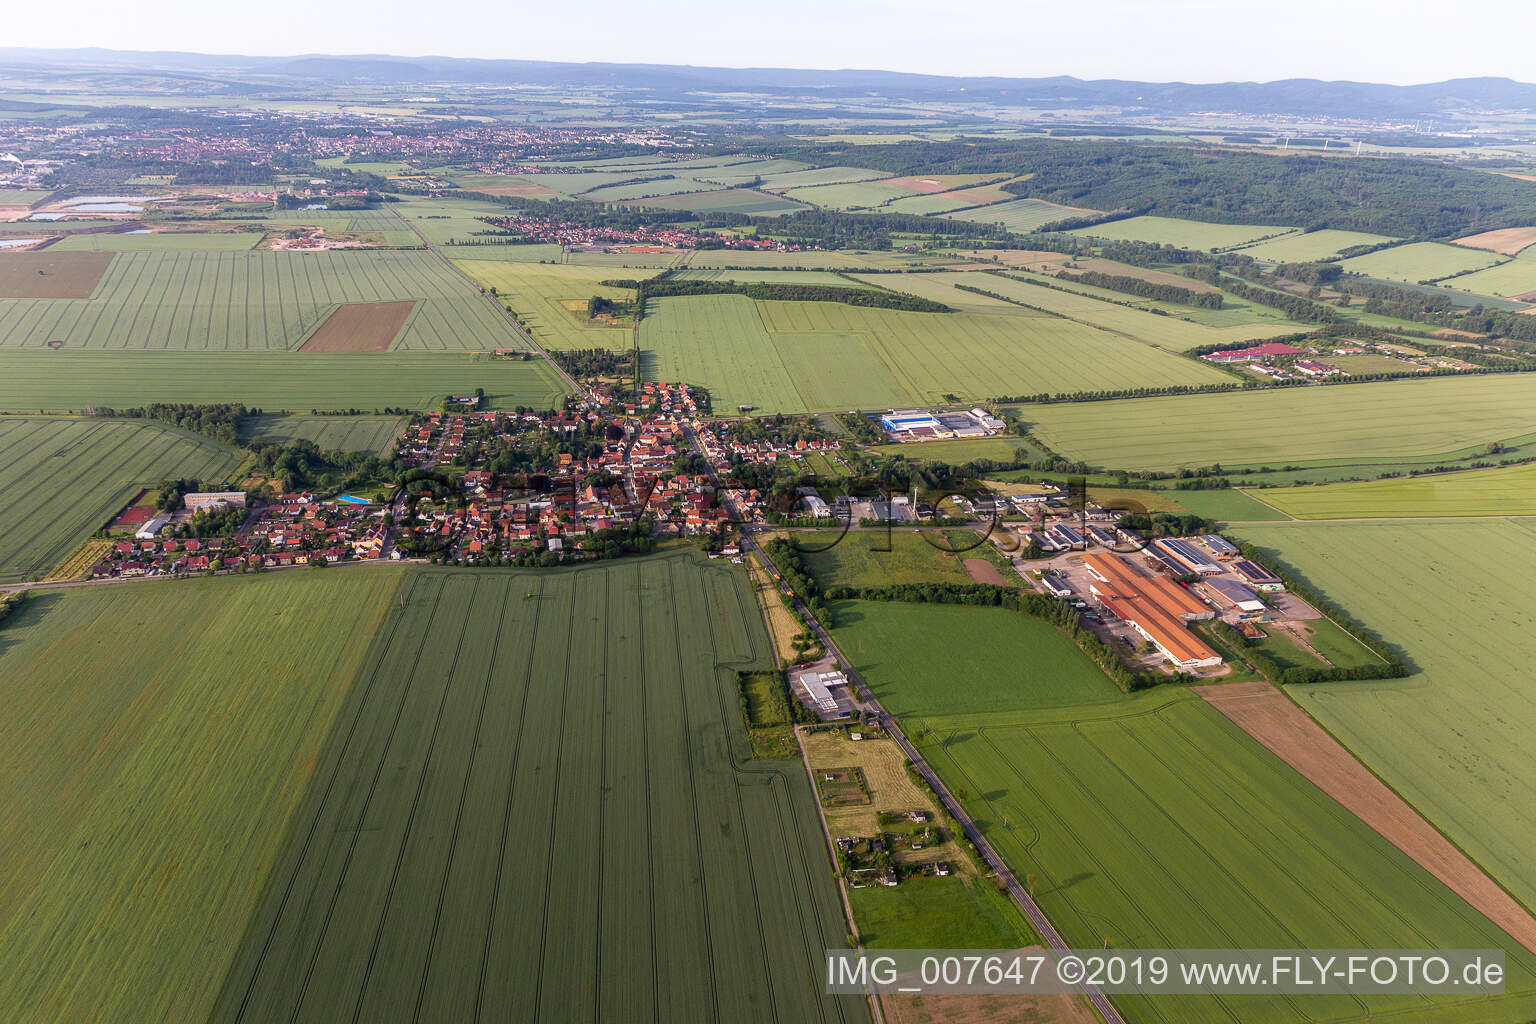 Vue aérienne de Vue sur la commune en bordure de champs agricoles et de zones agricoles à Warza dans le département Thuringe, Allemagne